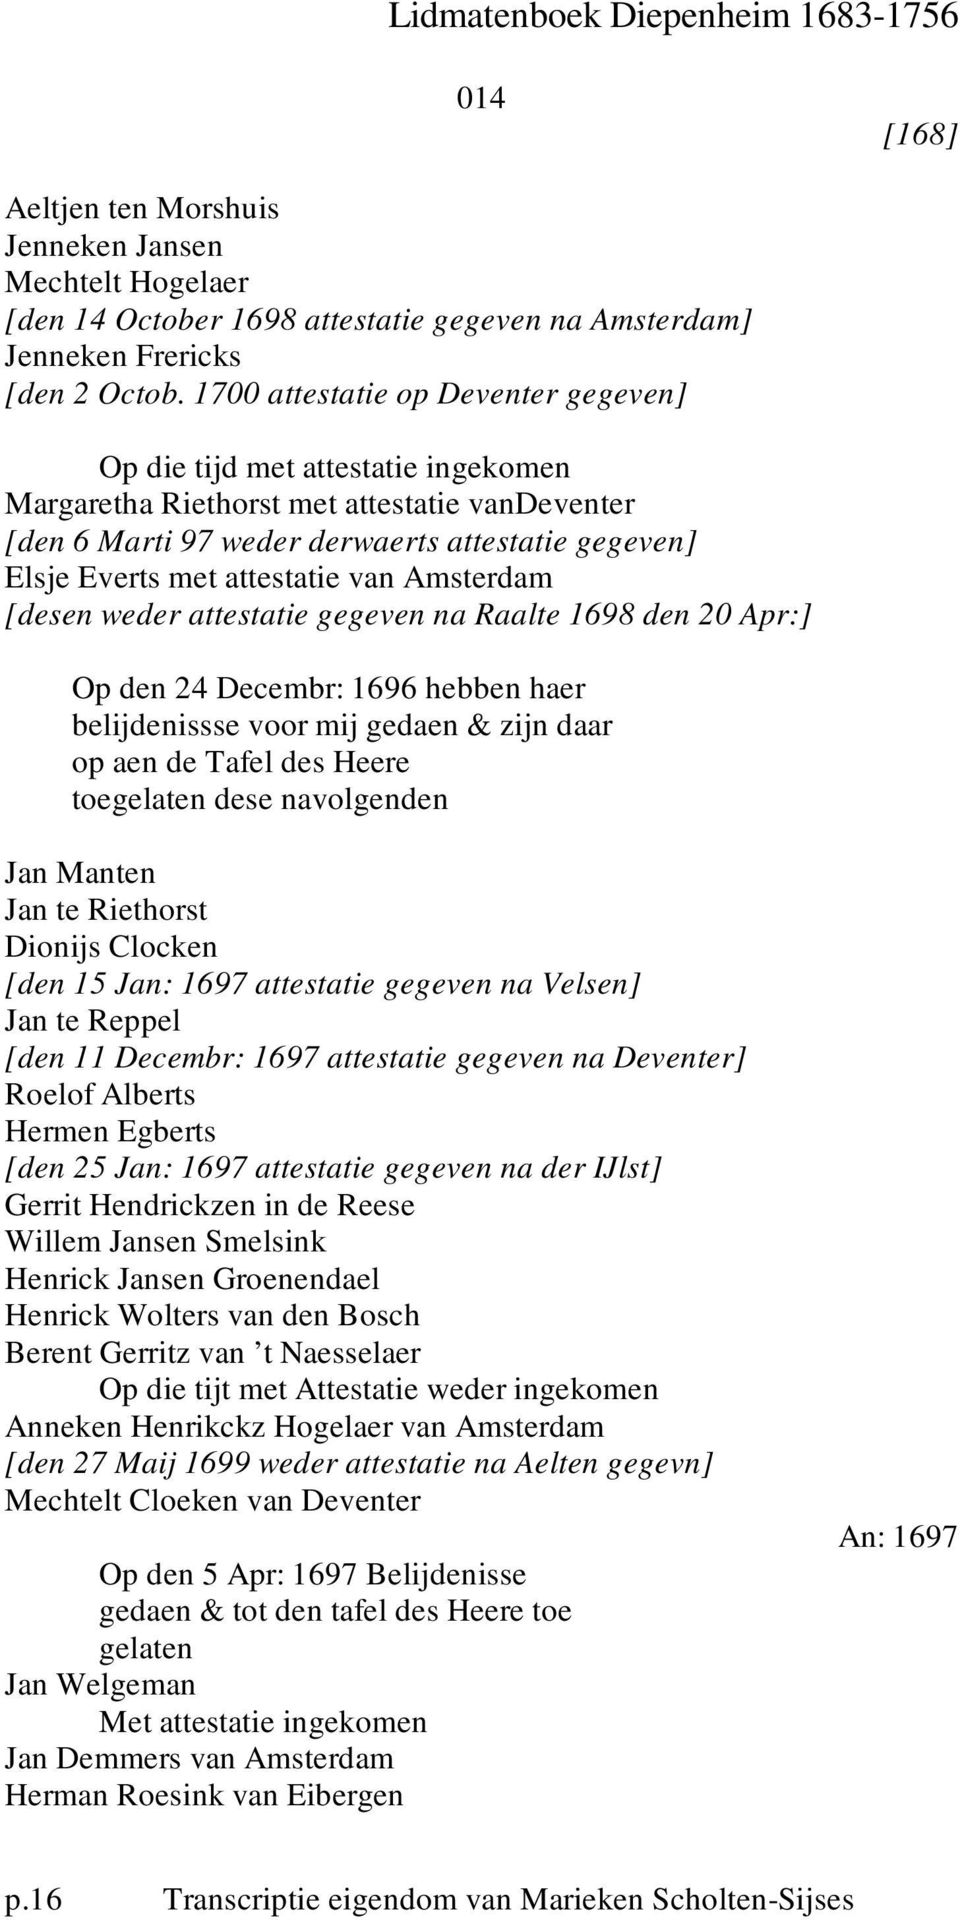 attestatie van Amsterdam [desen weder attestatie gegeven na Raalte 1698 den 20 Apr:] Op den 24 Decembr: 1696 hebben haer belijdenissse voor mij gedaen & zijn daar op aen de Tafel des Heere toegelaten